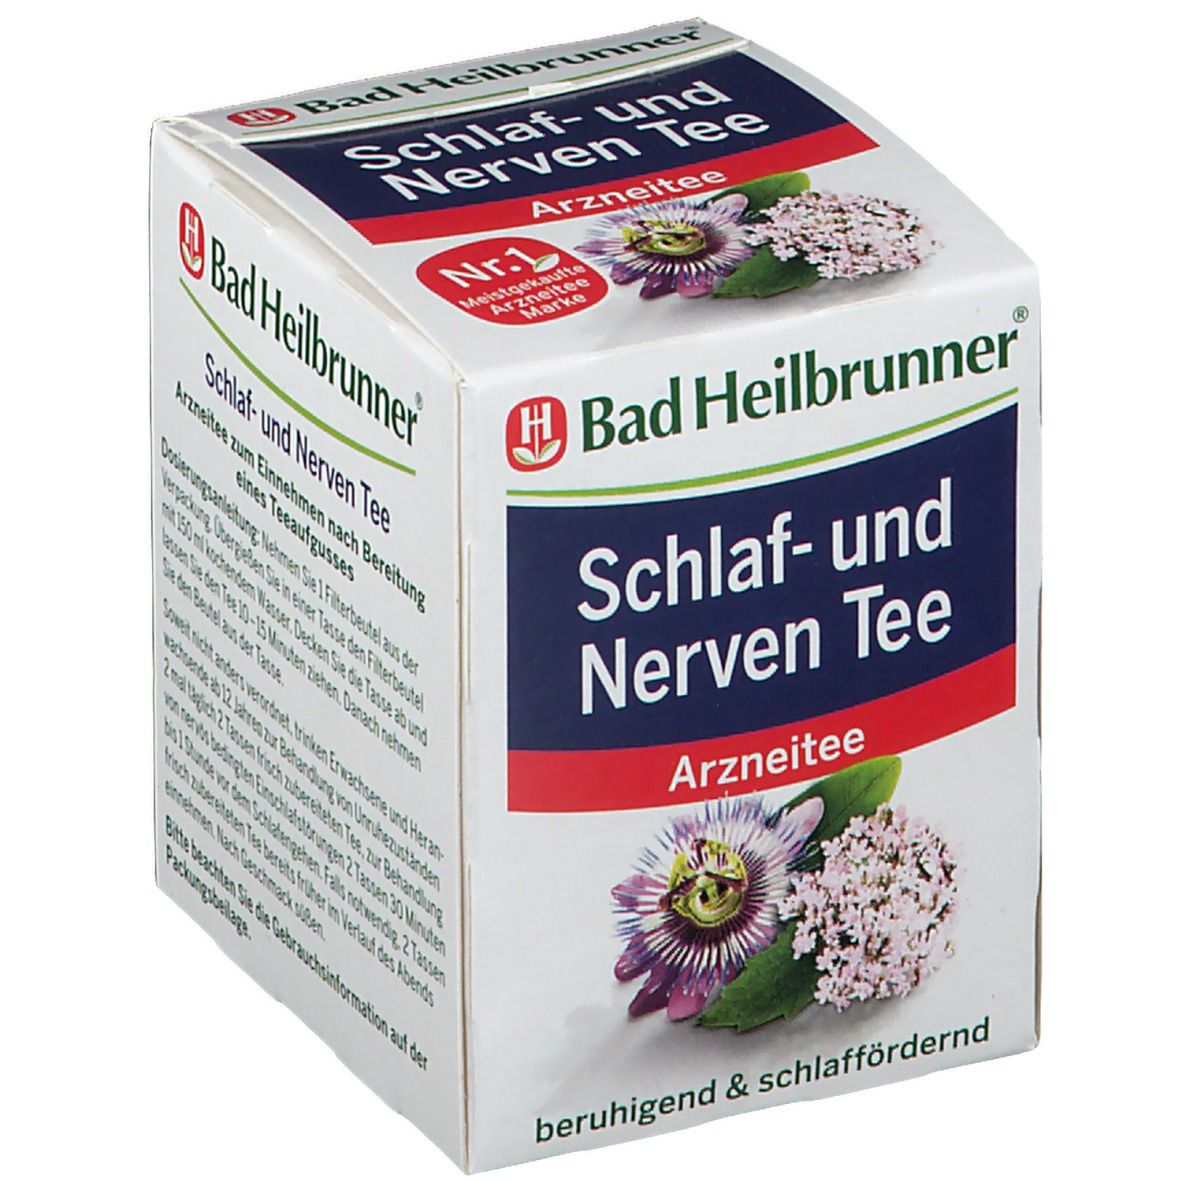 Bad Heilbrunner® Schlaf- und Nerven Tee